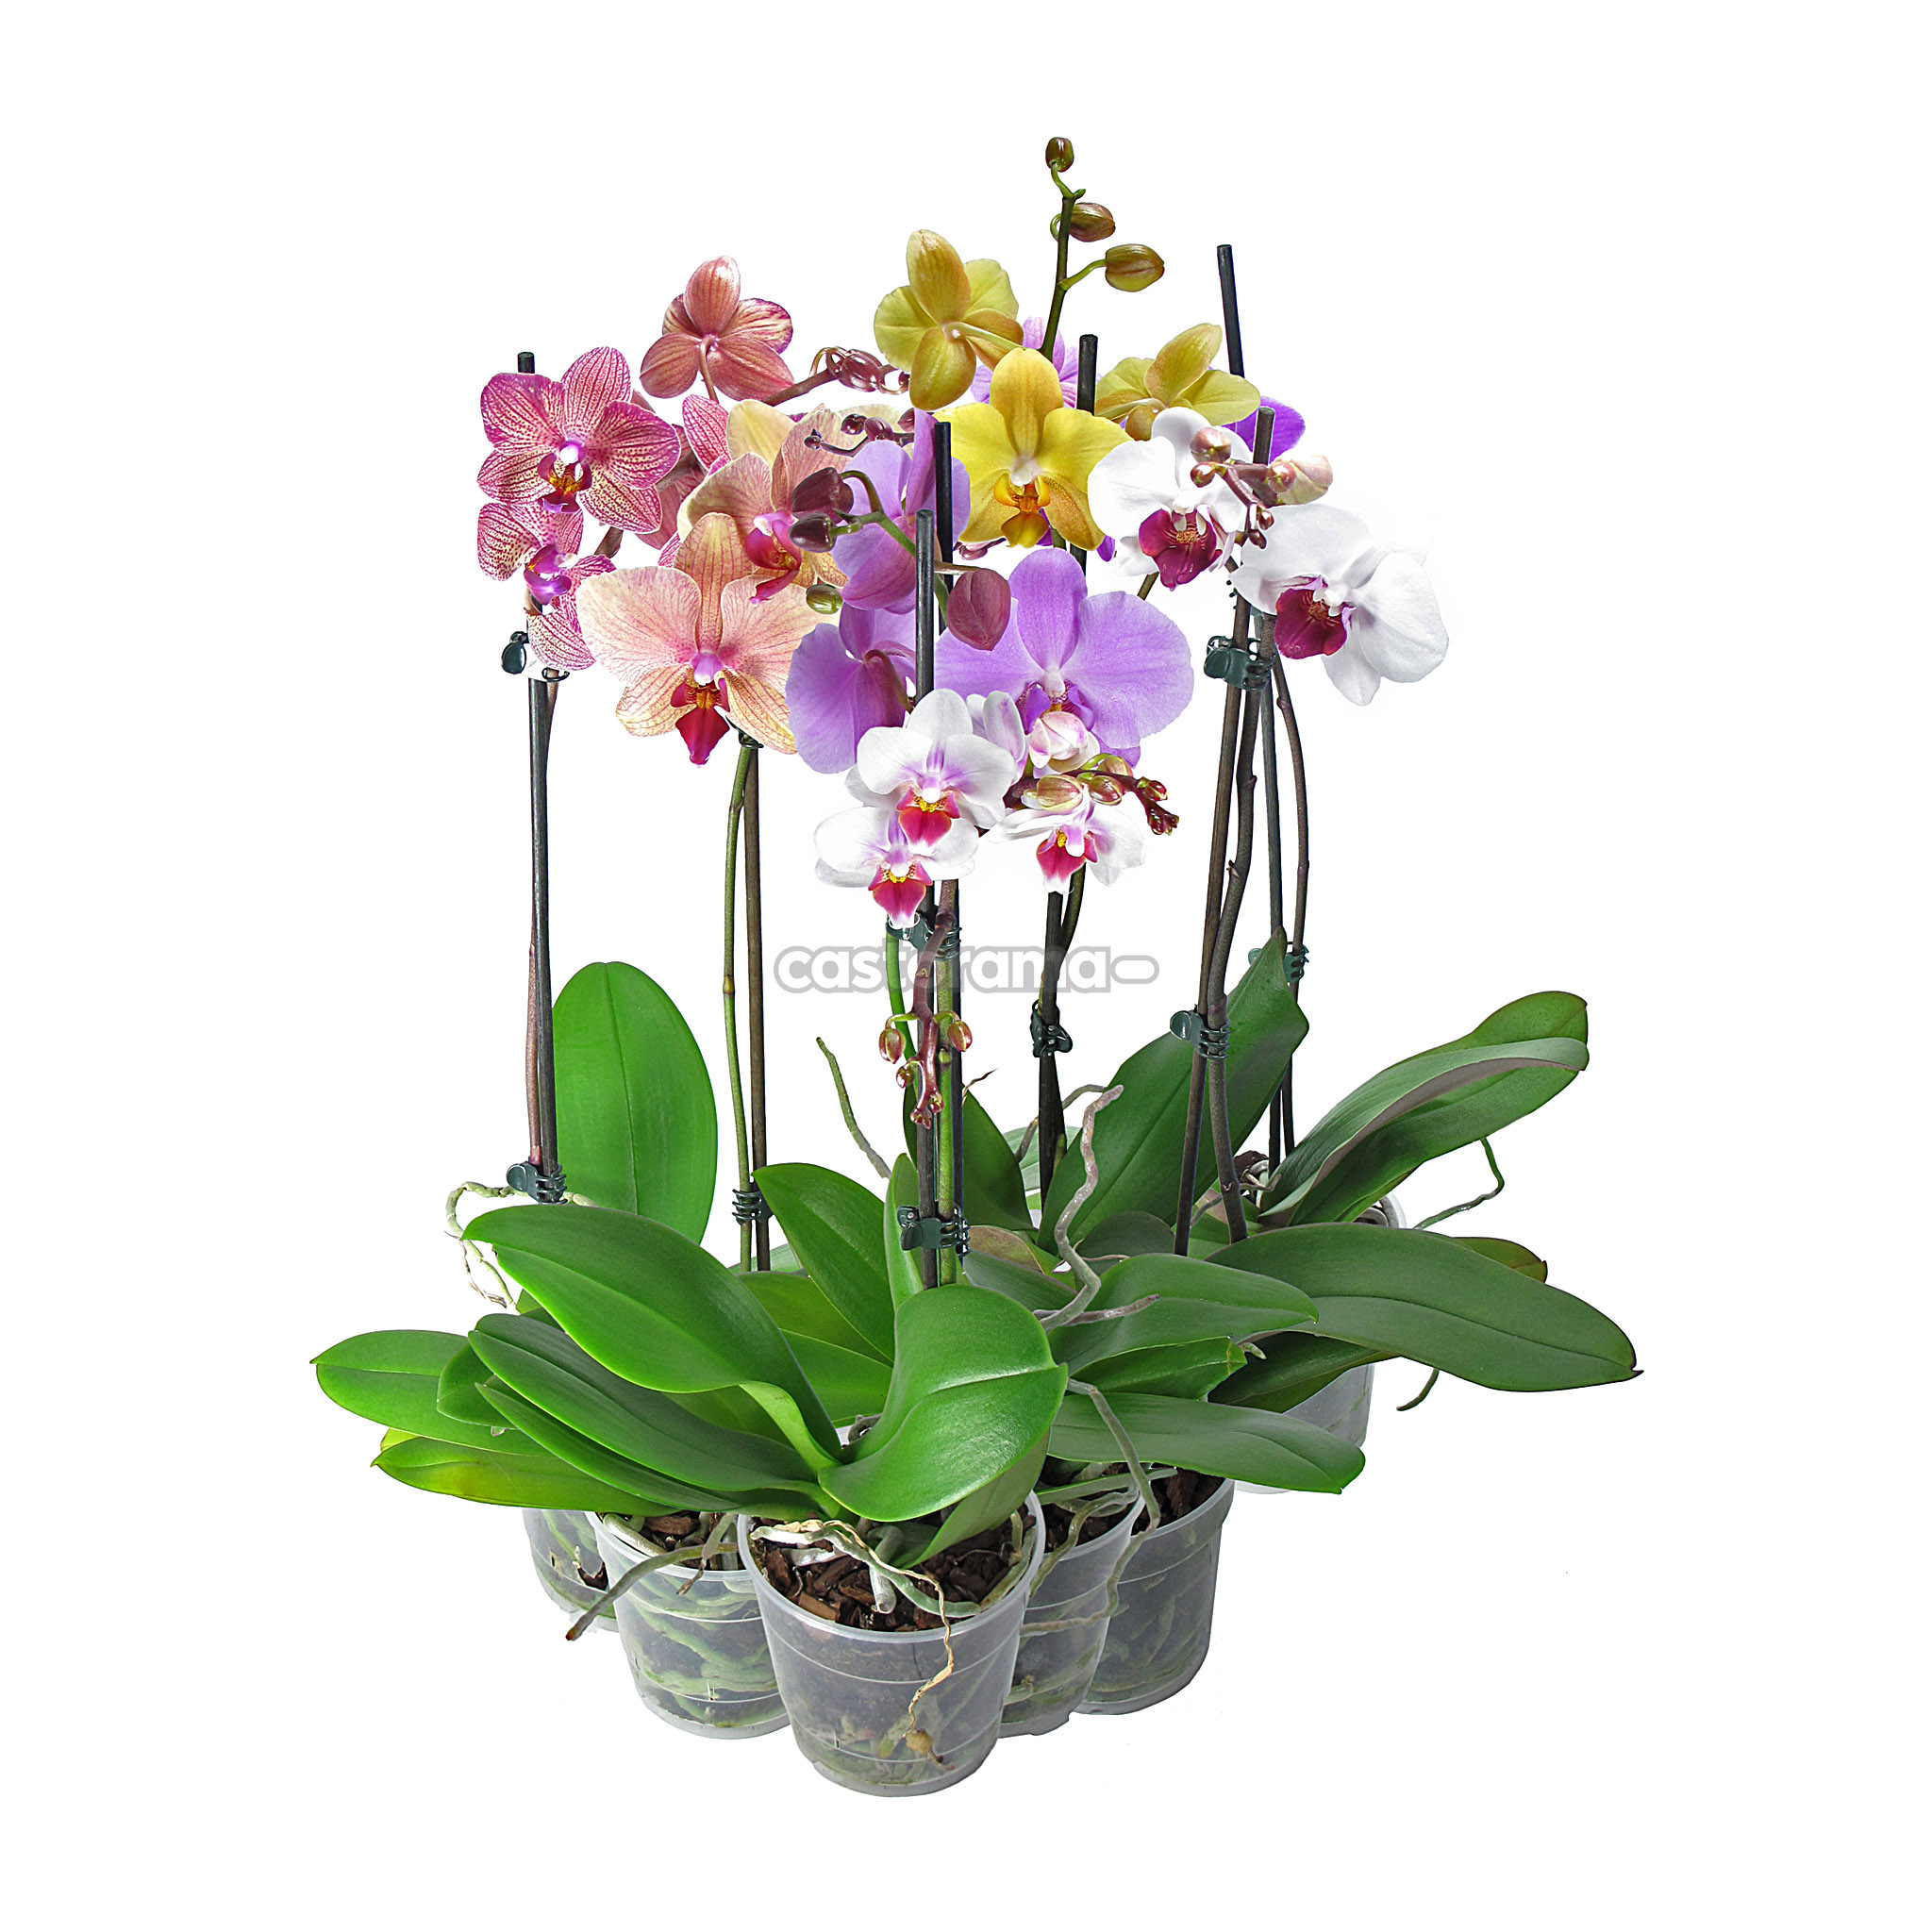 Орхидея в горшке купить в интернет. Орхидея микс d12 h40. Орхидея фаленопсис. Орхидея фаленопсис микс. Фаленопсис микс 1ст d12.